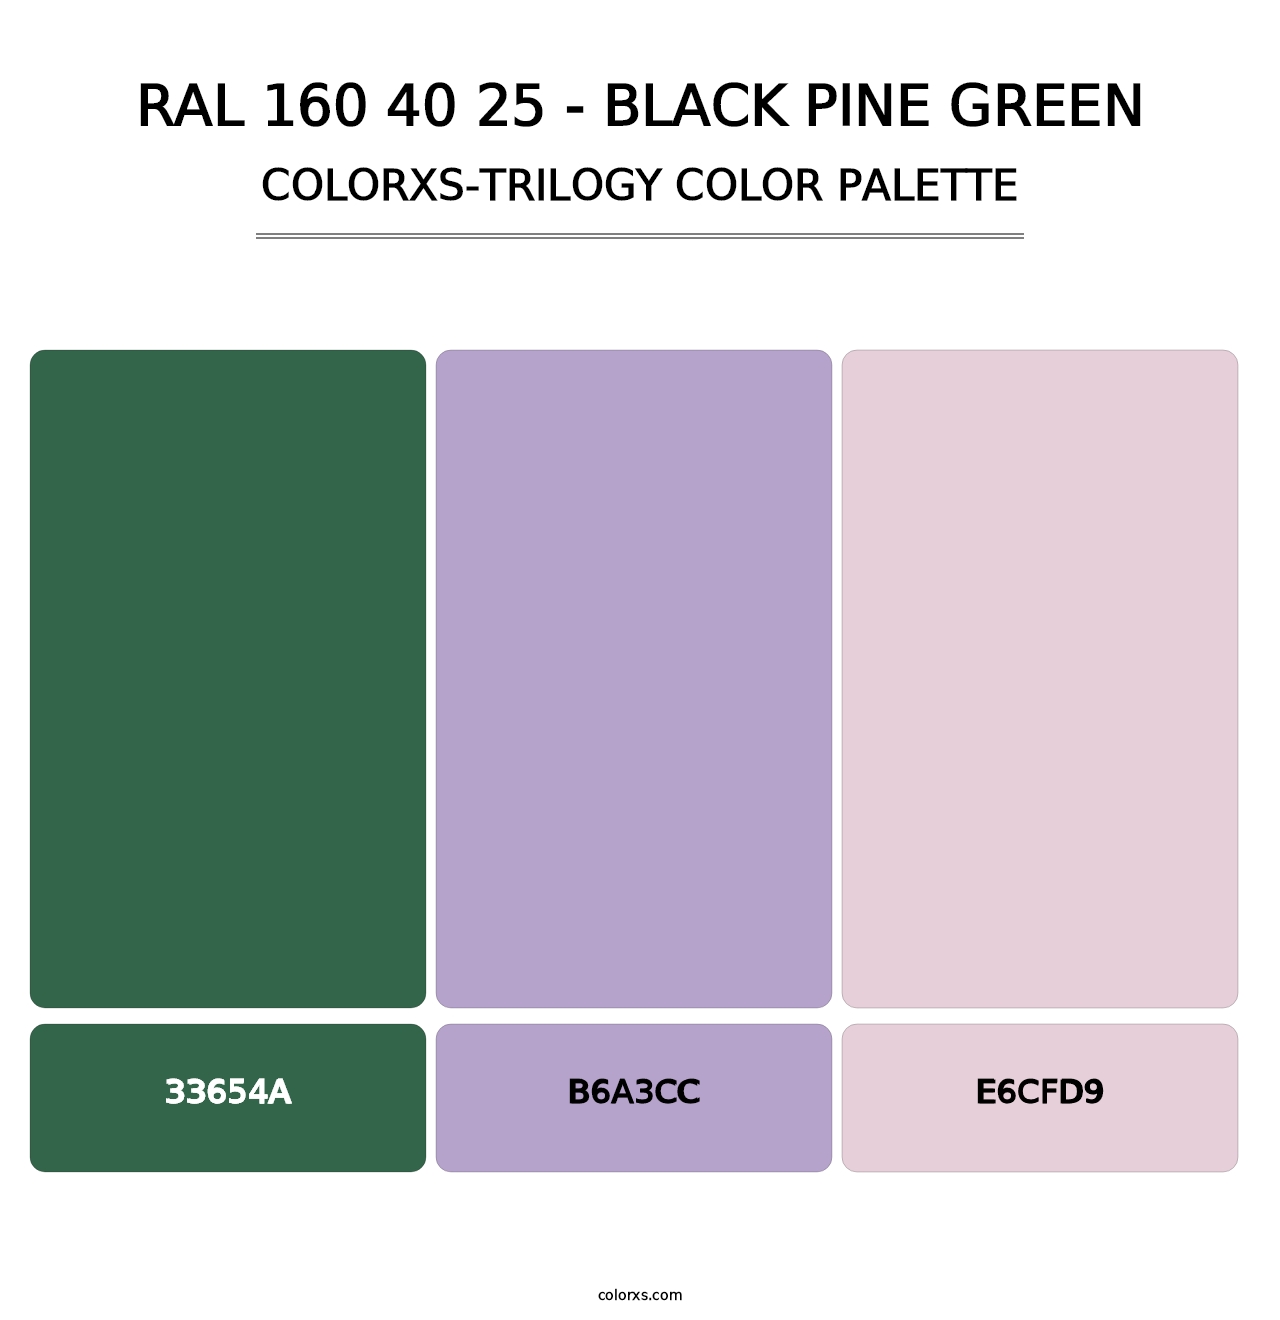 RAL 160 40 25 - Black Pine Green - Colorxs Trilogy Palette